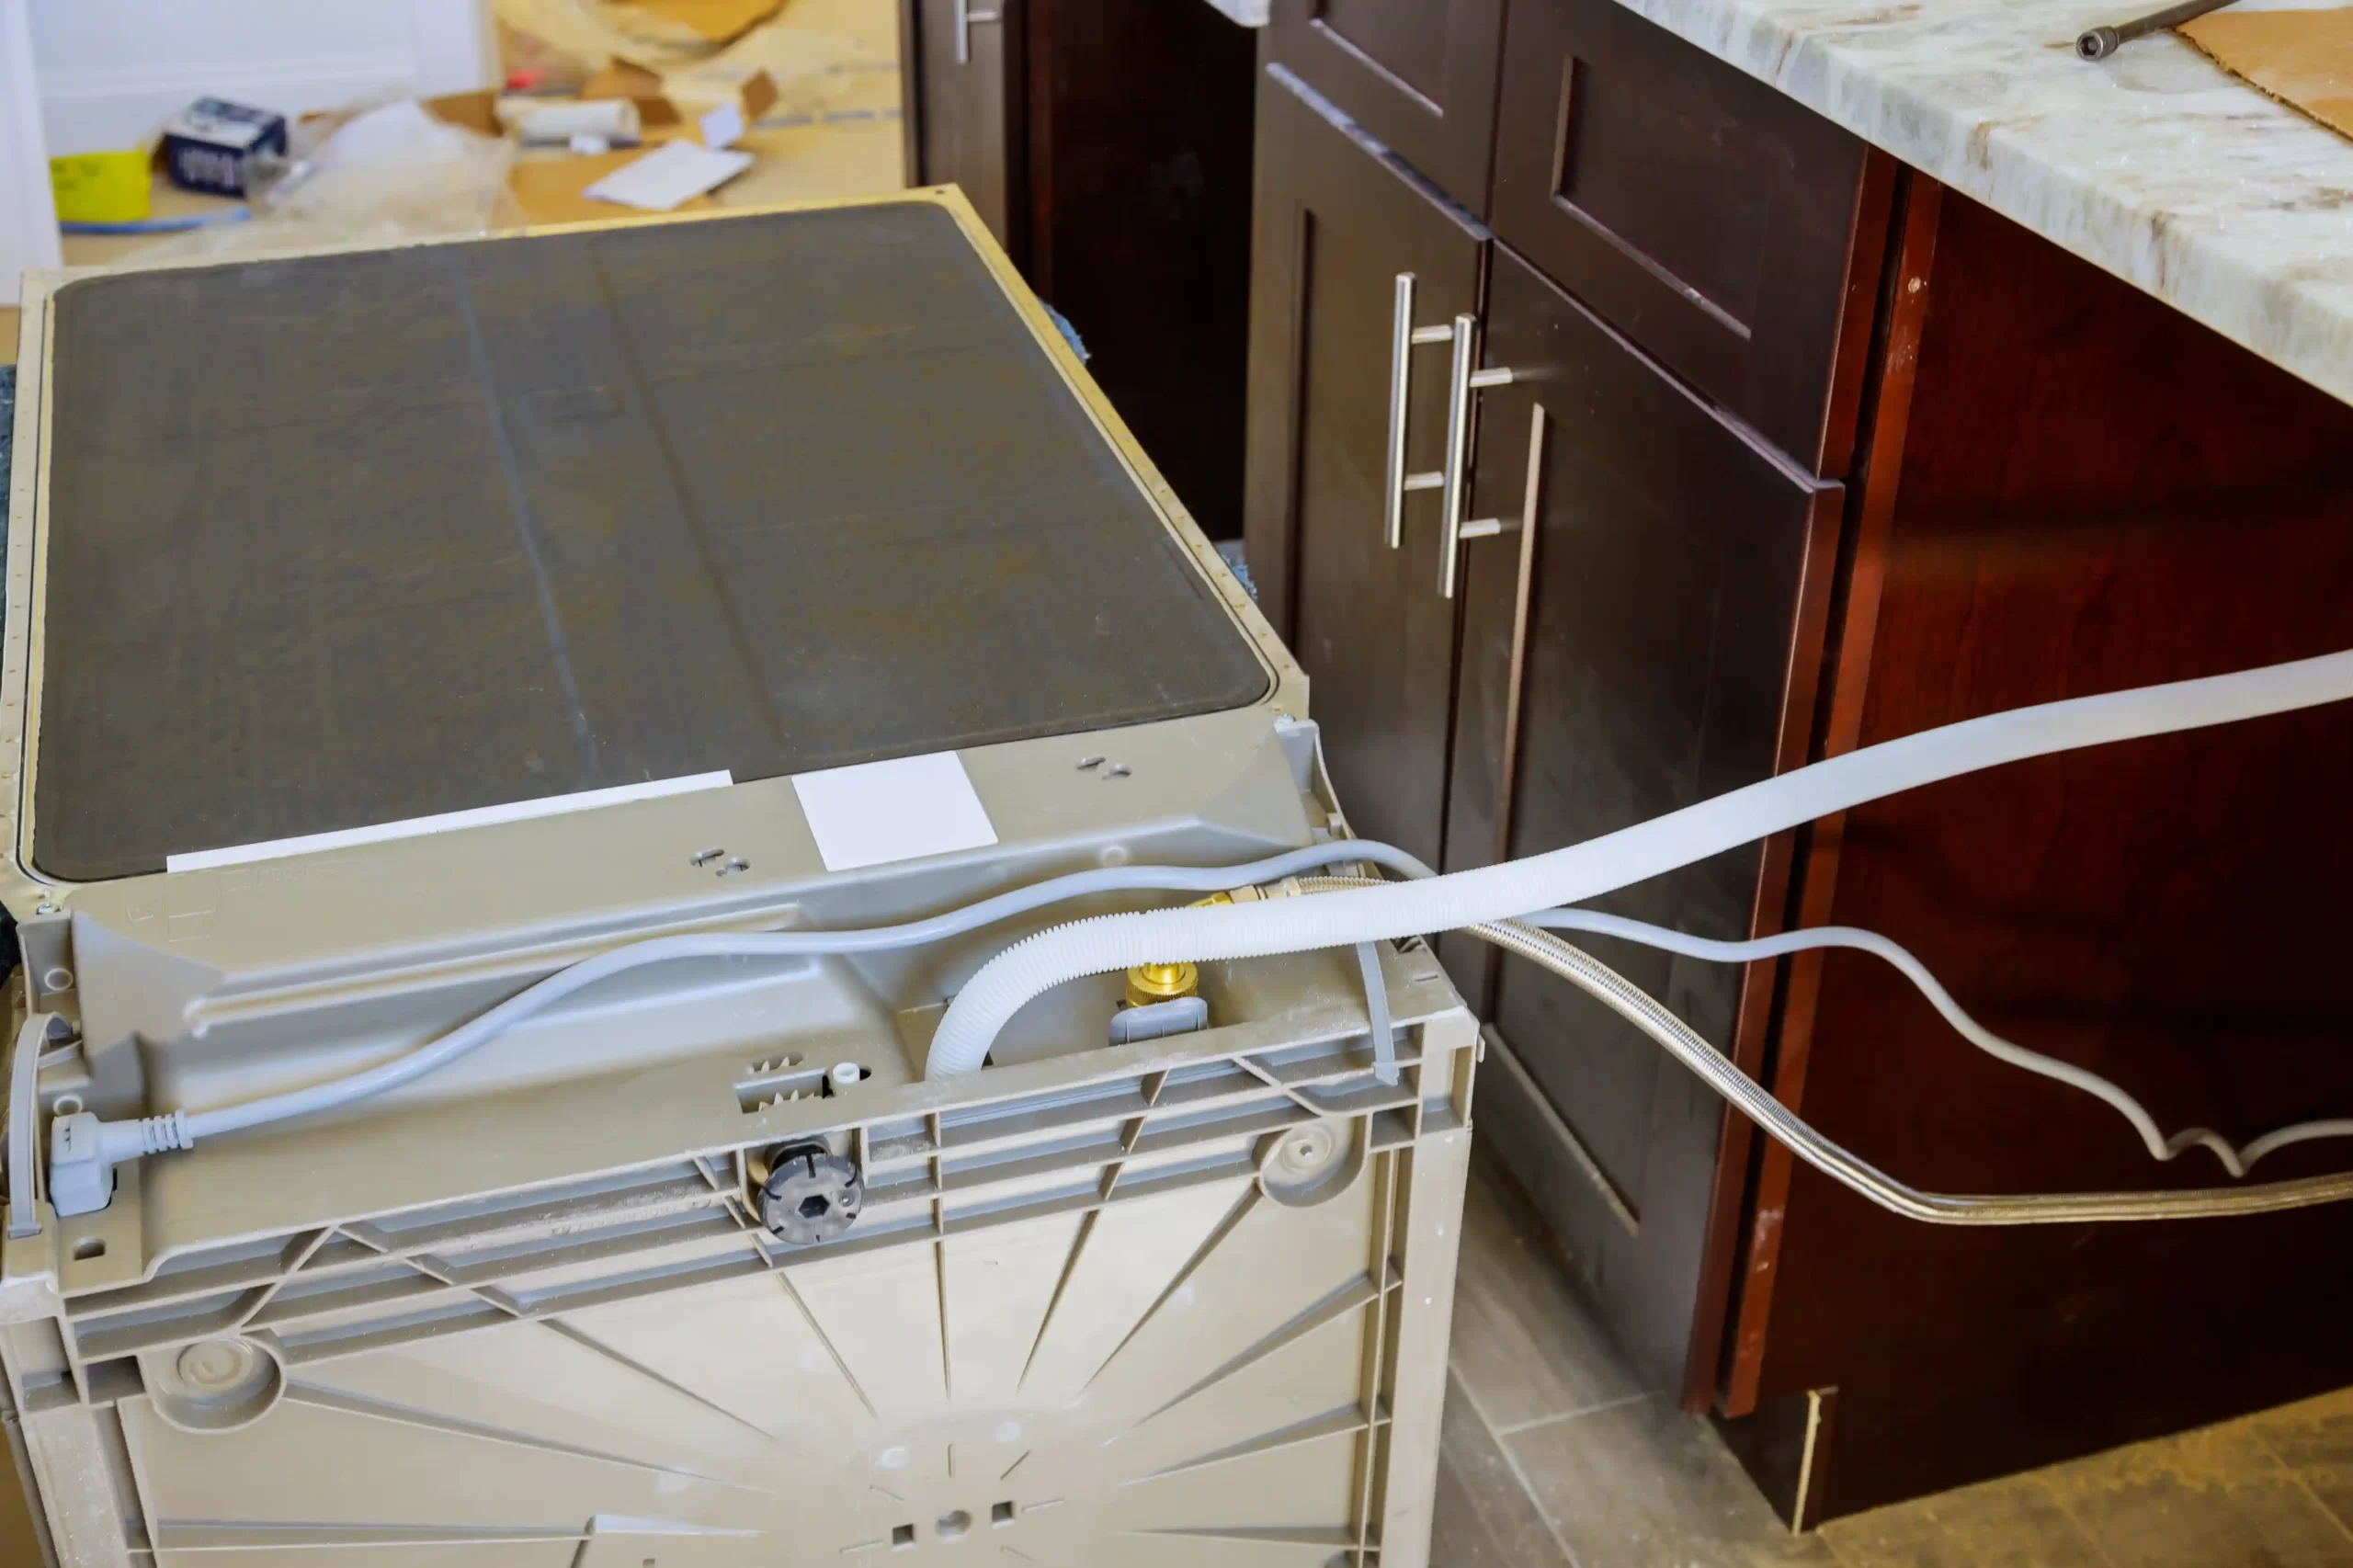 Comment enlever un lave-vaisselle encastrable ? - Le Blog by Electro Dépôt